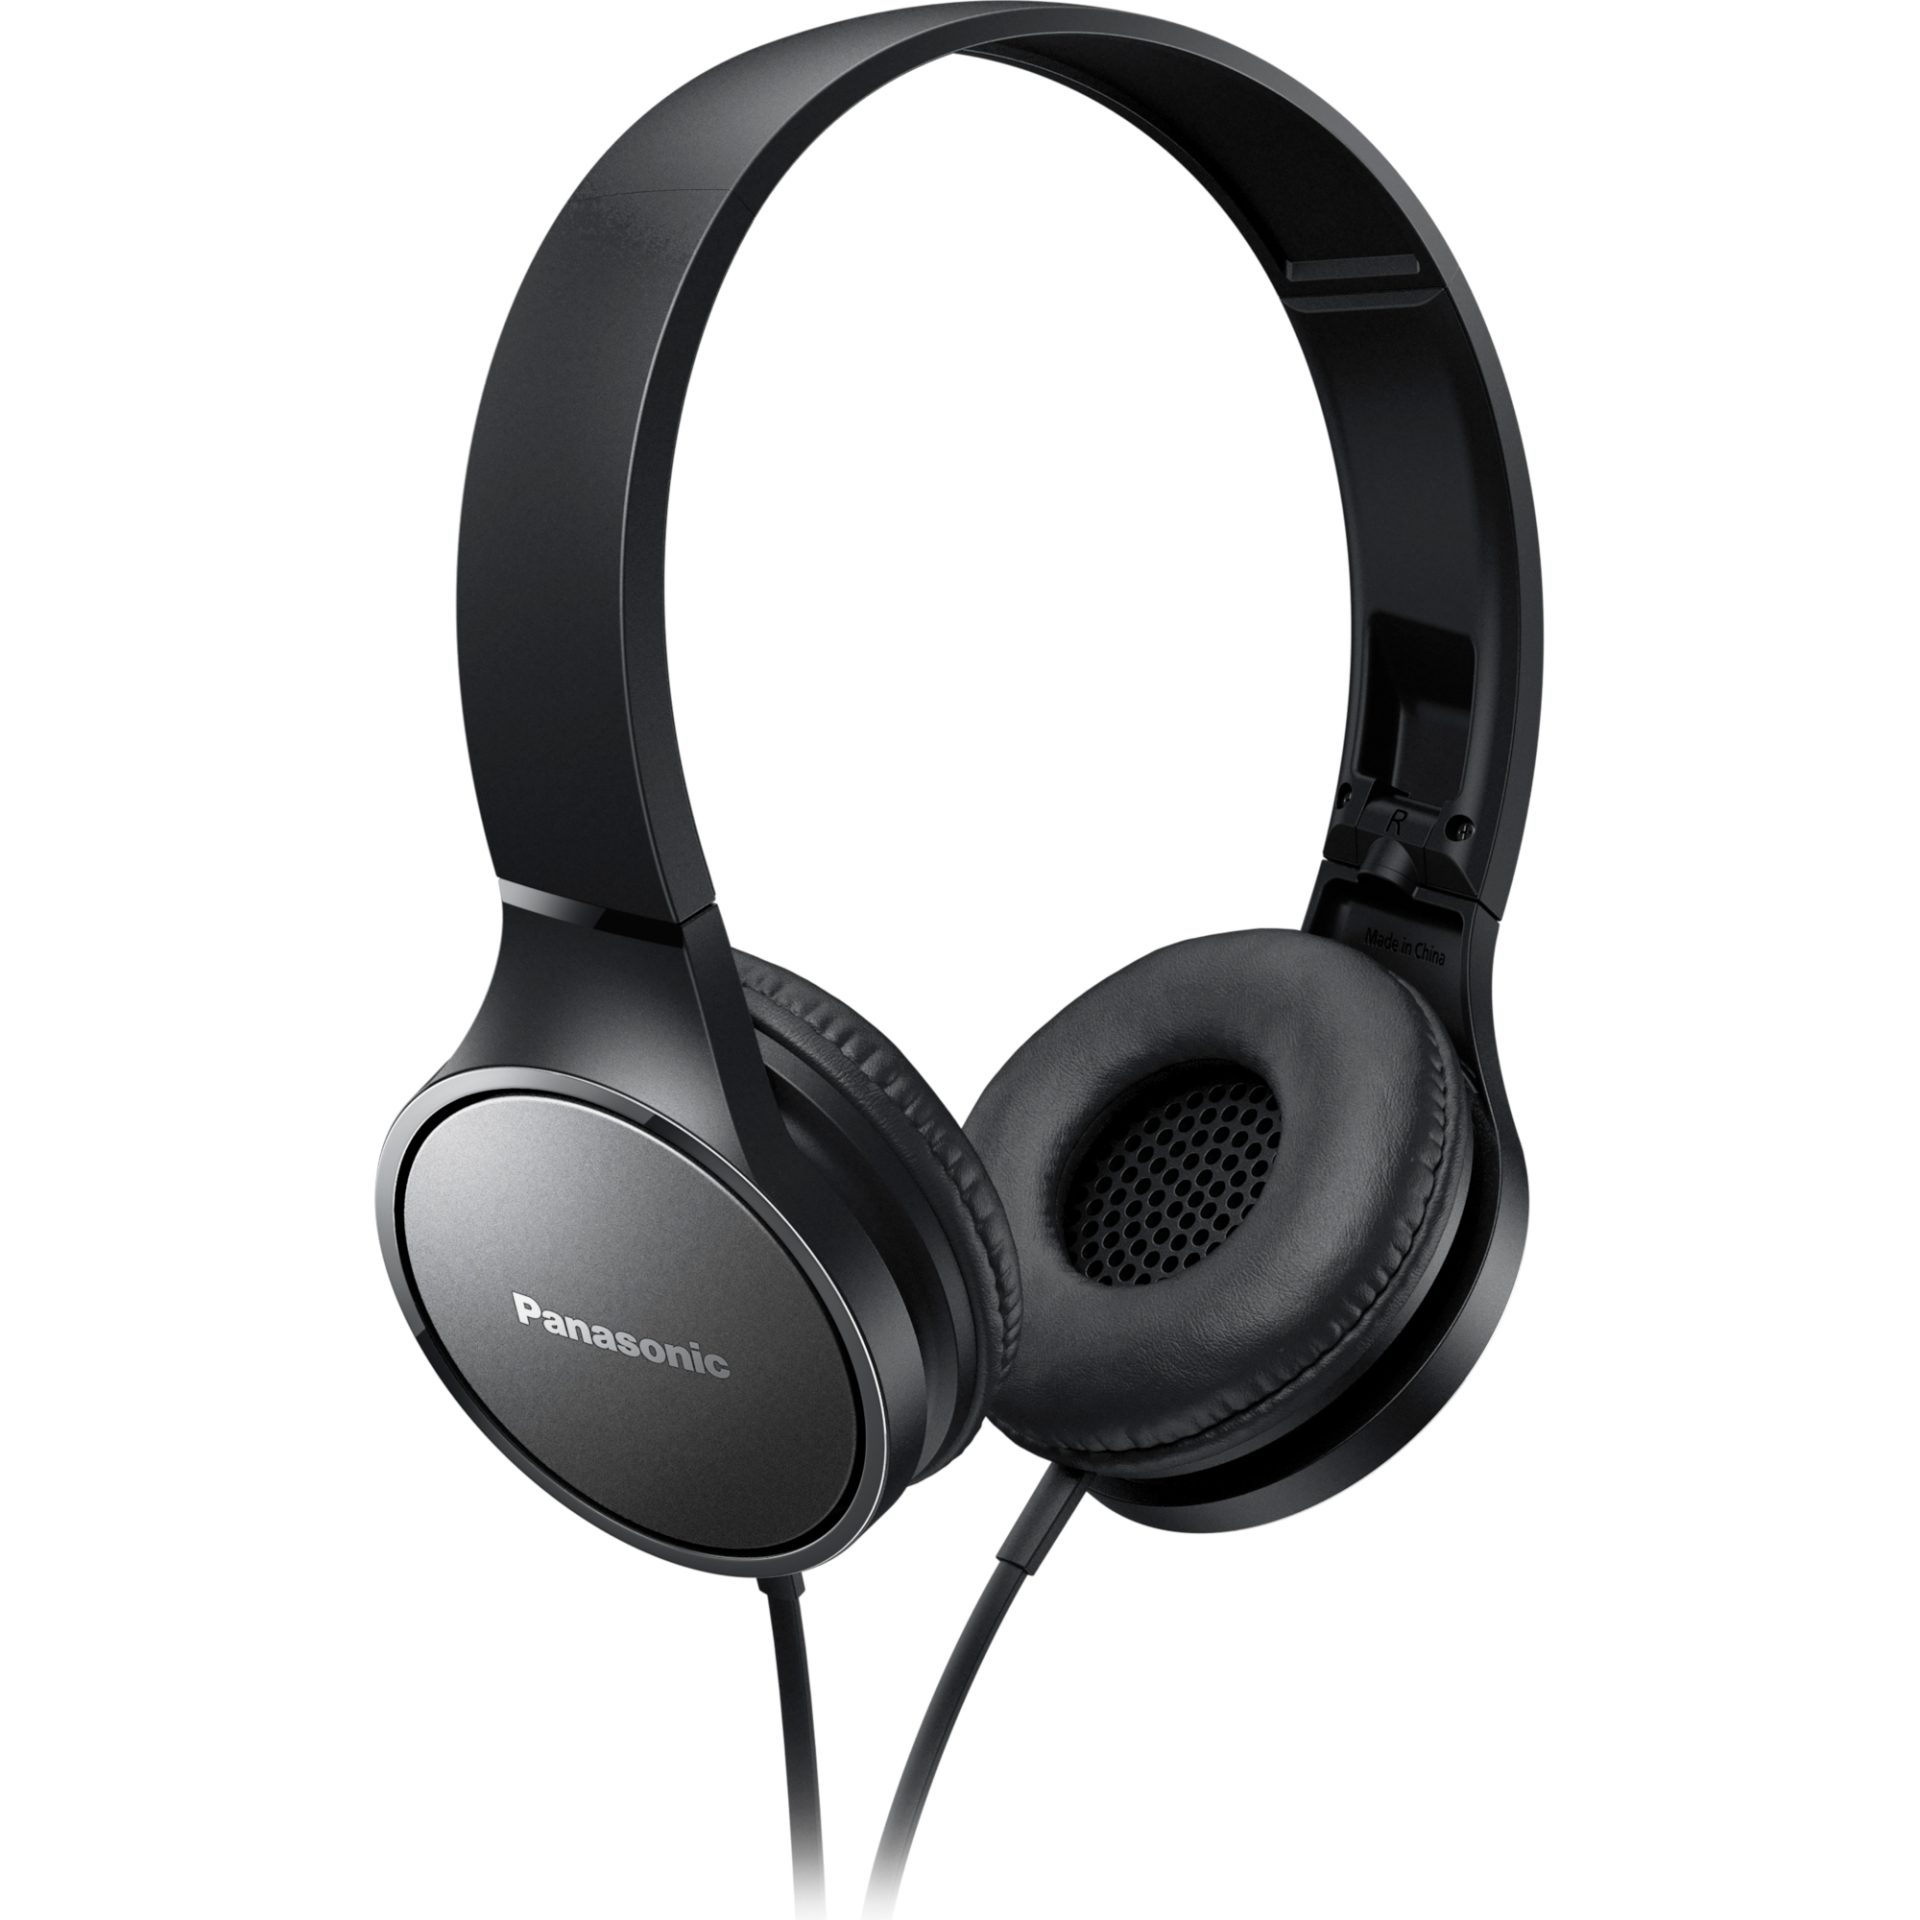 Panasonic RP-HF300 stylová kabelová sluchátka přes uši s mikrofonem (30mm neodymový magnetický měnič, skládací dovnitř, pohodlné), černá